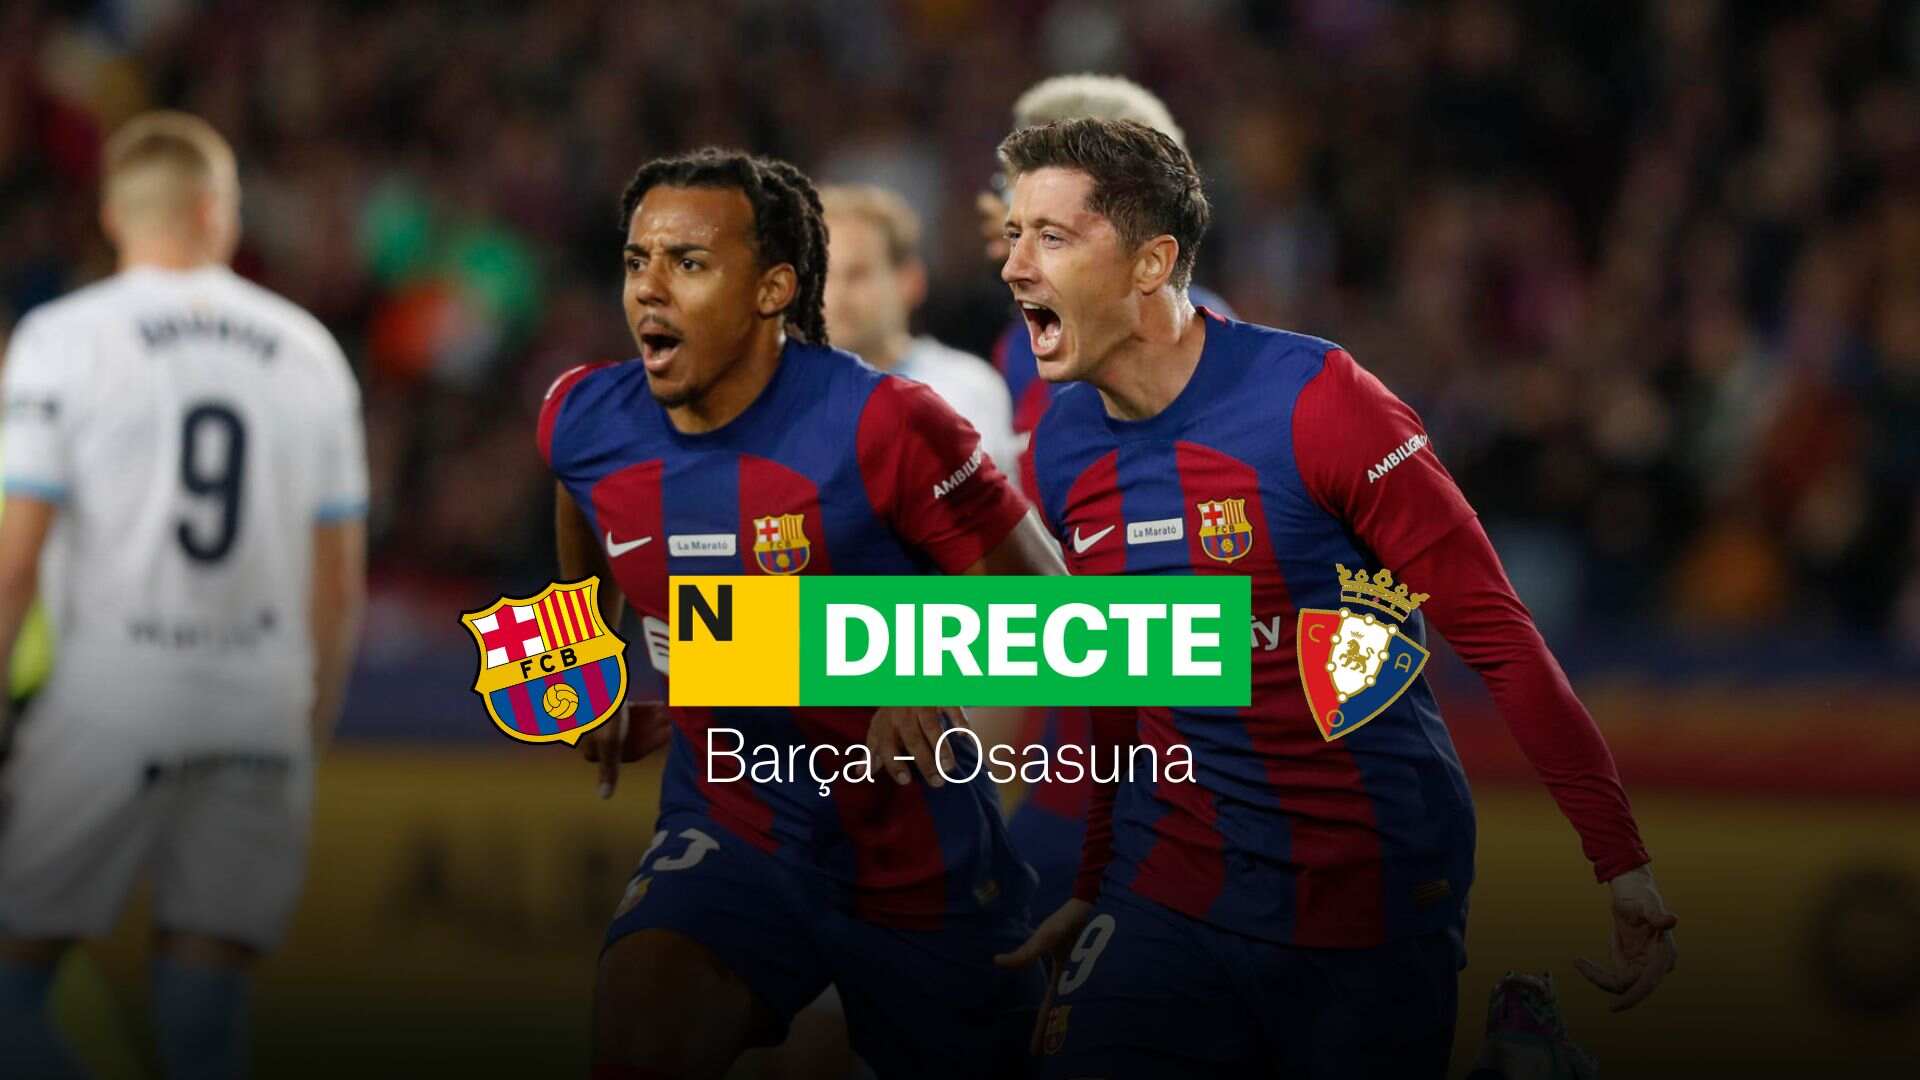 Barça - Osasuna de la Supercopa d'Espanya, DIRECTE | Resultat, resum i gols